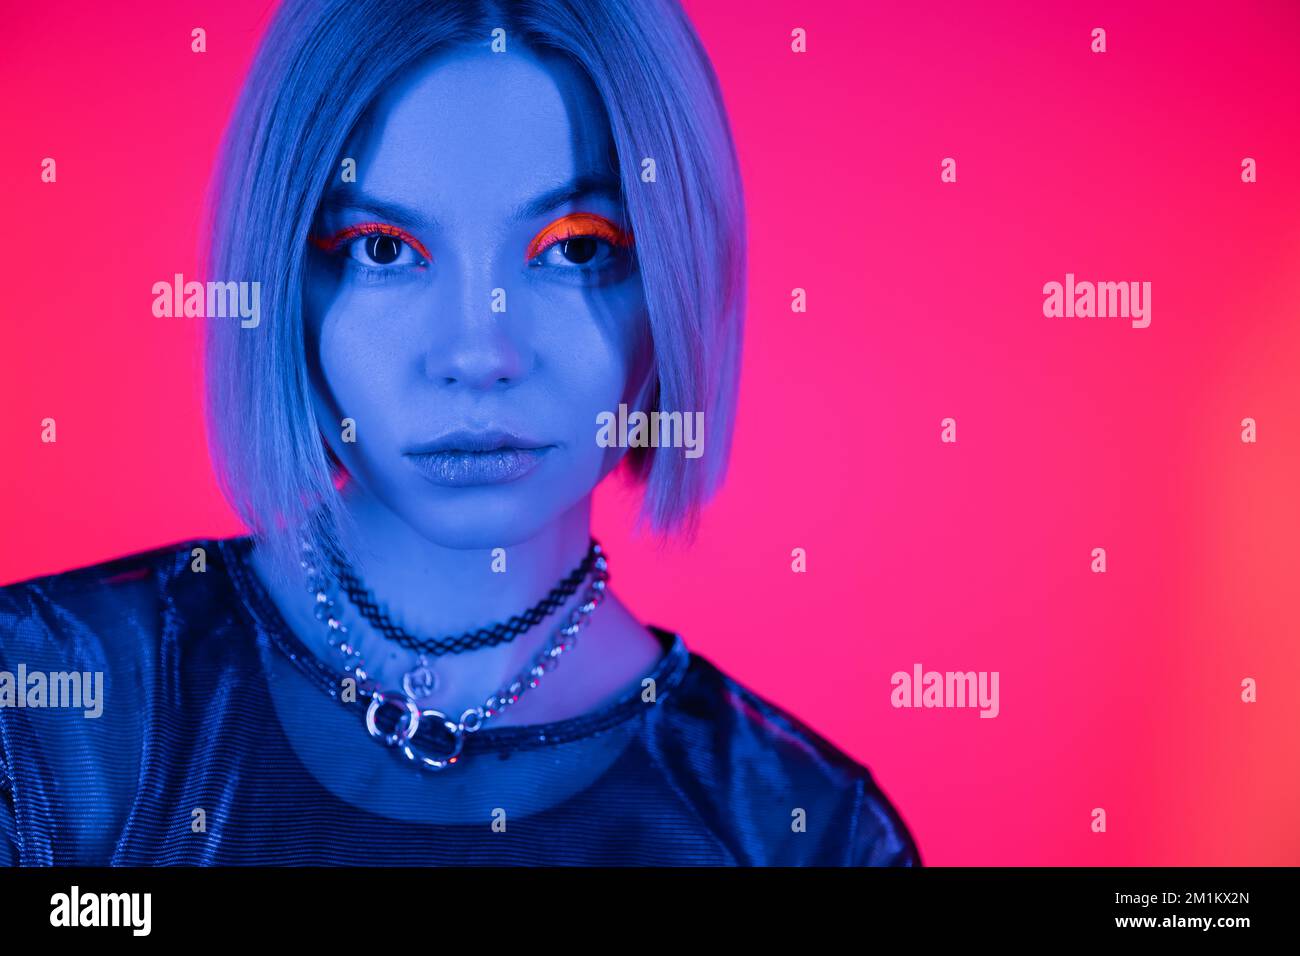 portrait de la femme tendance avec colliers et maquillage fluorescent dans lumière bleue néon sur fond rose profond, image de stock Banque D'Images